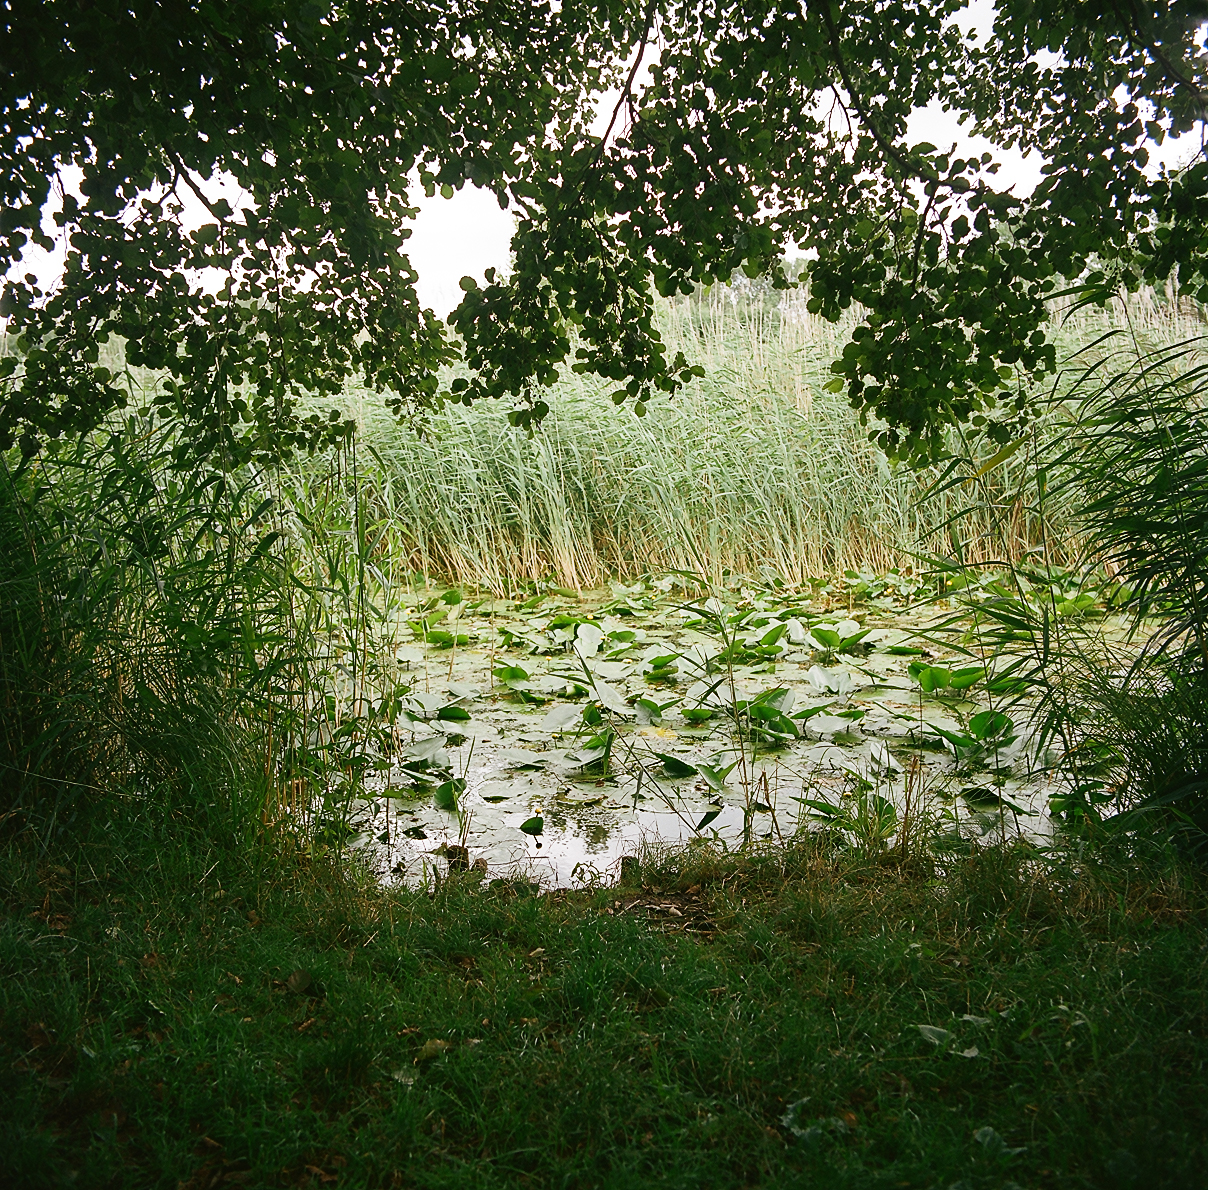 Kanały na Kamionkowskich Błoniach Elekcyjnych, o bujnej roślinności wodno-błotnej, wymagają sezonowych zabiegów ogrodniczych.